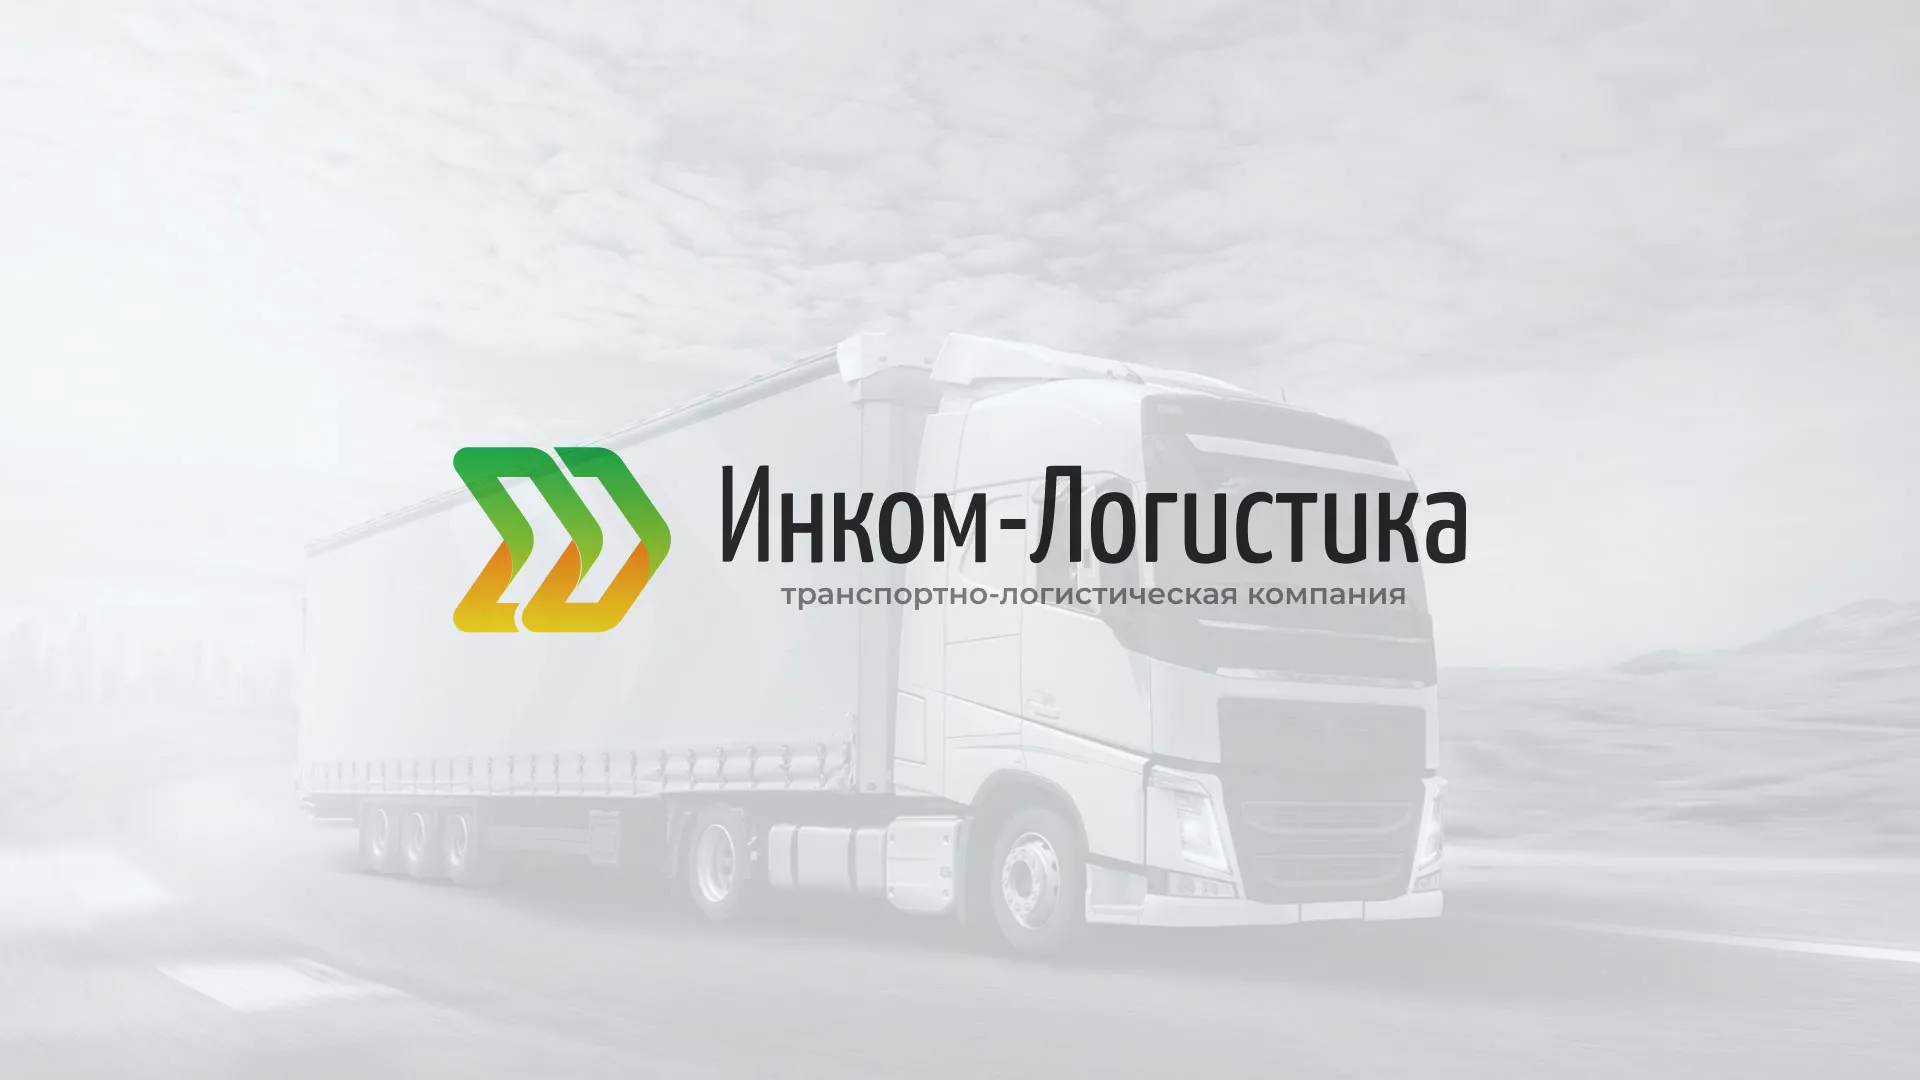 Разработка логотипа и сайта компании «Инком-Логистика» в Владивостоке